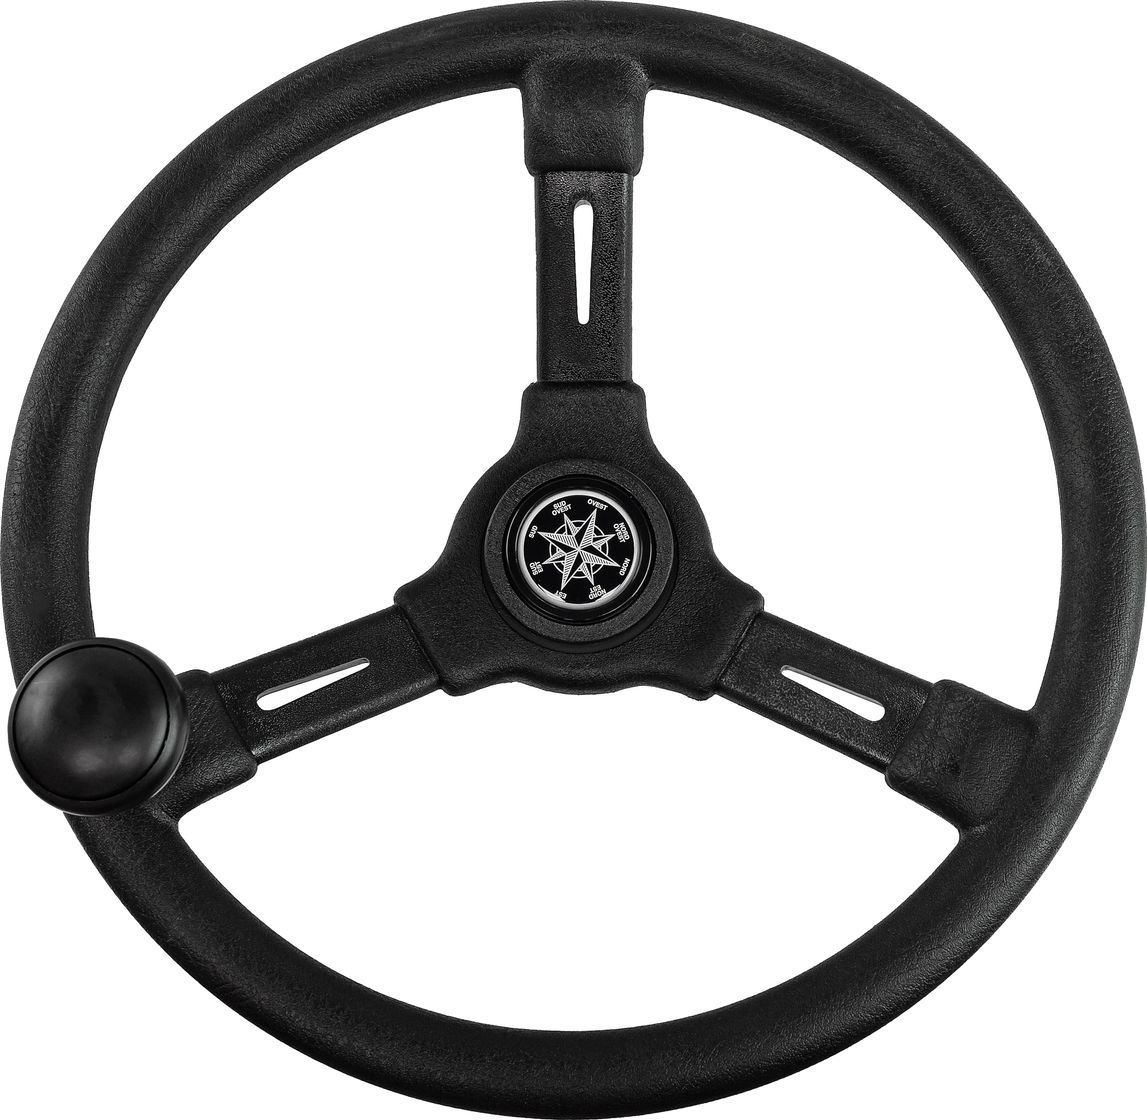 Рулевое колесо RIVIERA черный обод и спицы д. 350 мм со спинером VN8250-01 рулевое колесо tavolara c s tavolara c s